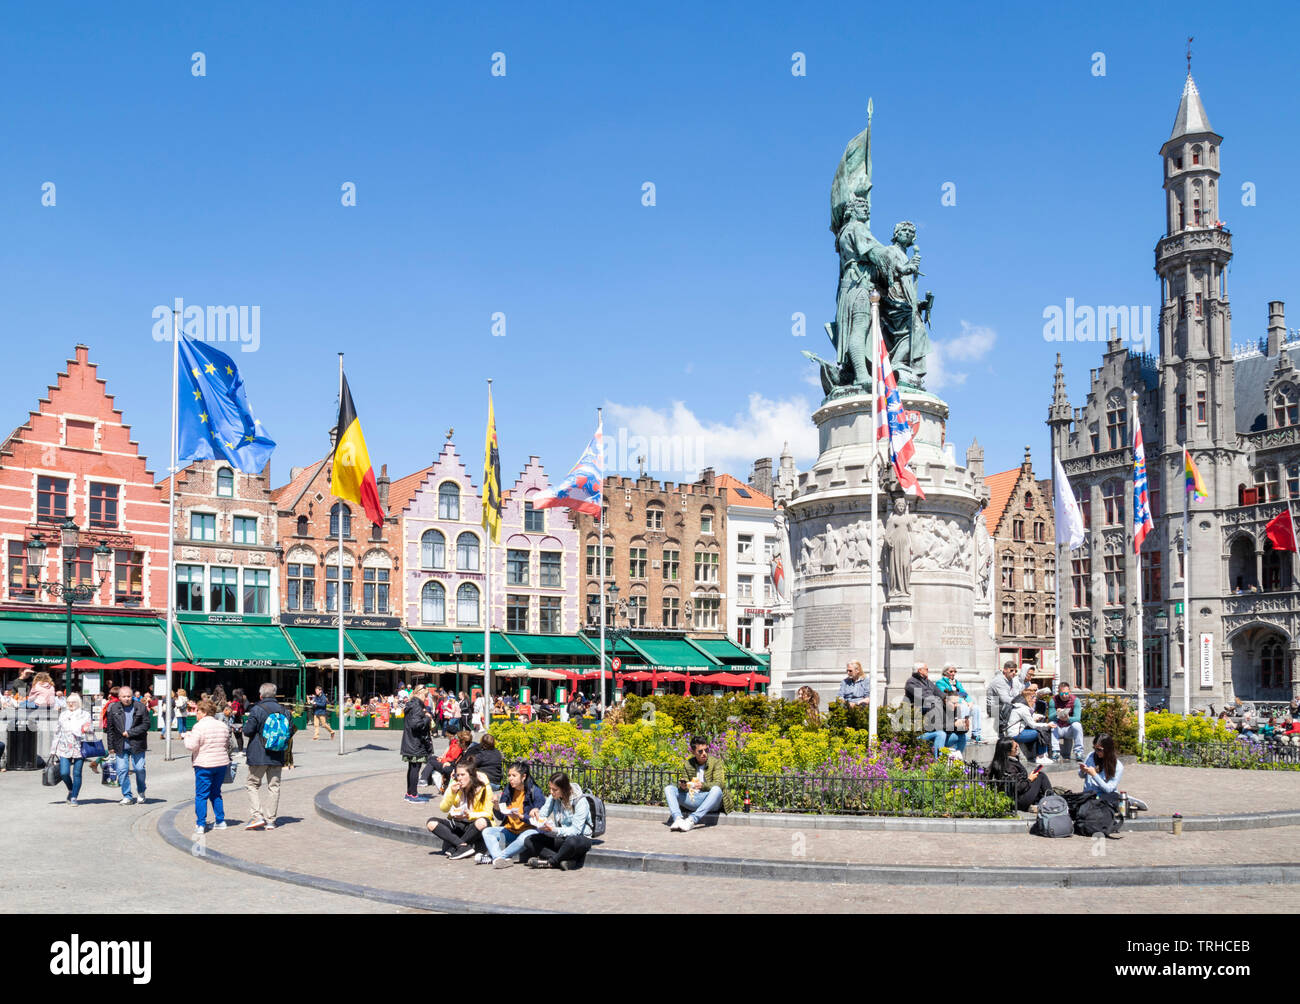 Edificios antiguos con ornamentadas gables en la histórica plaza con estatua de Jan breydal y Pieter de coninck en el Markt de Brujas Bélgica UE Europa central Foto de stock